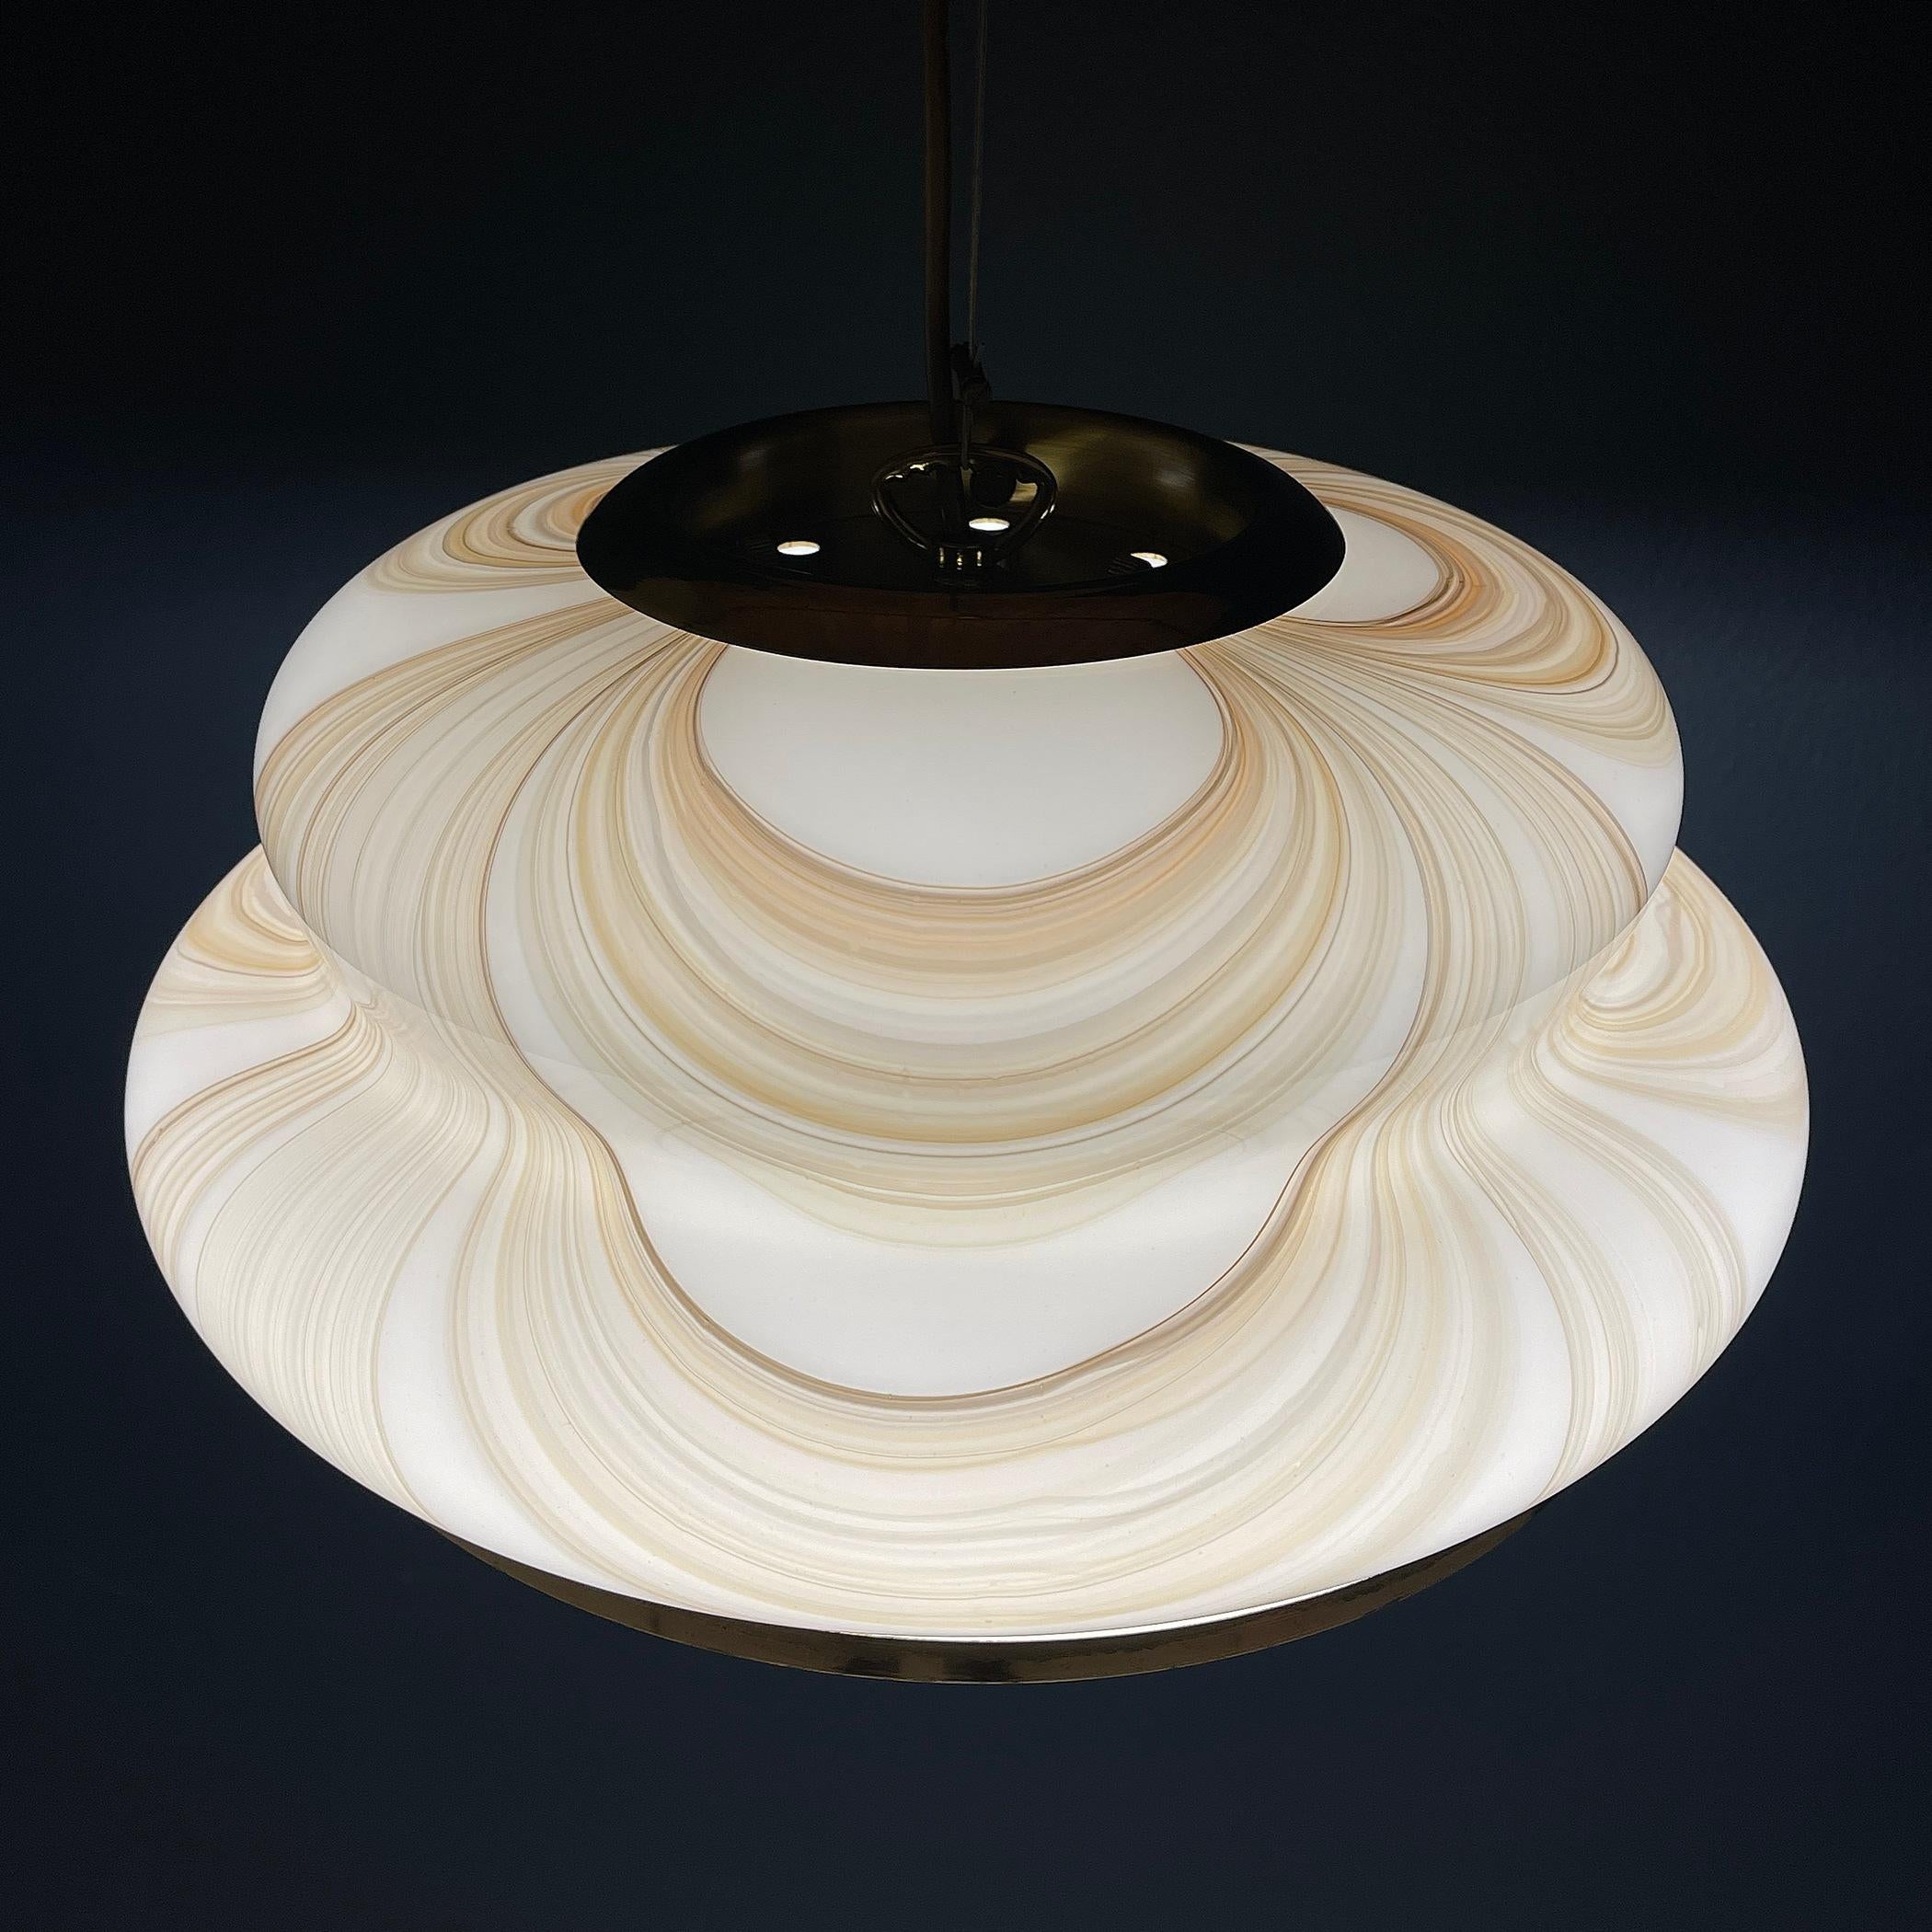 Dévoilez l'élégance de cette lampe suspendue Murano, méticuleusement fabriquée en Italie dans les années 1970. Cette pièce exquise met en valeur l'art des souffleurs de verre de Murano, où chaque détail a été délicatement soufflé à la main.